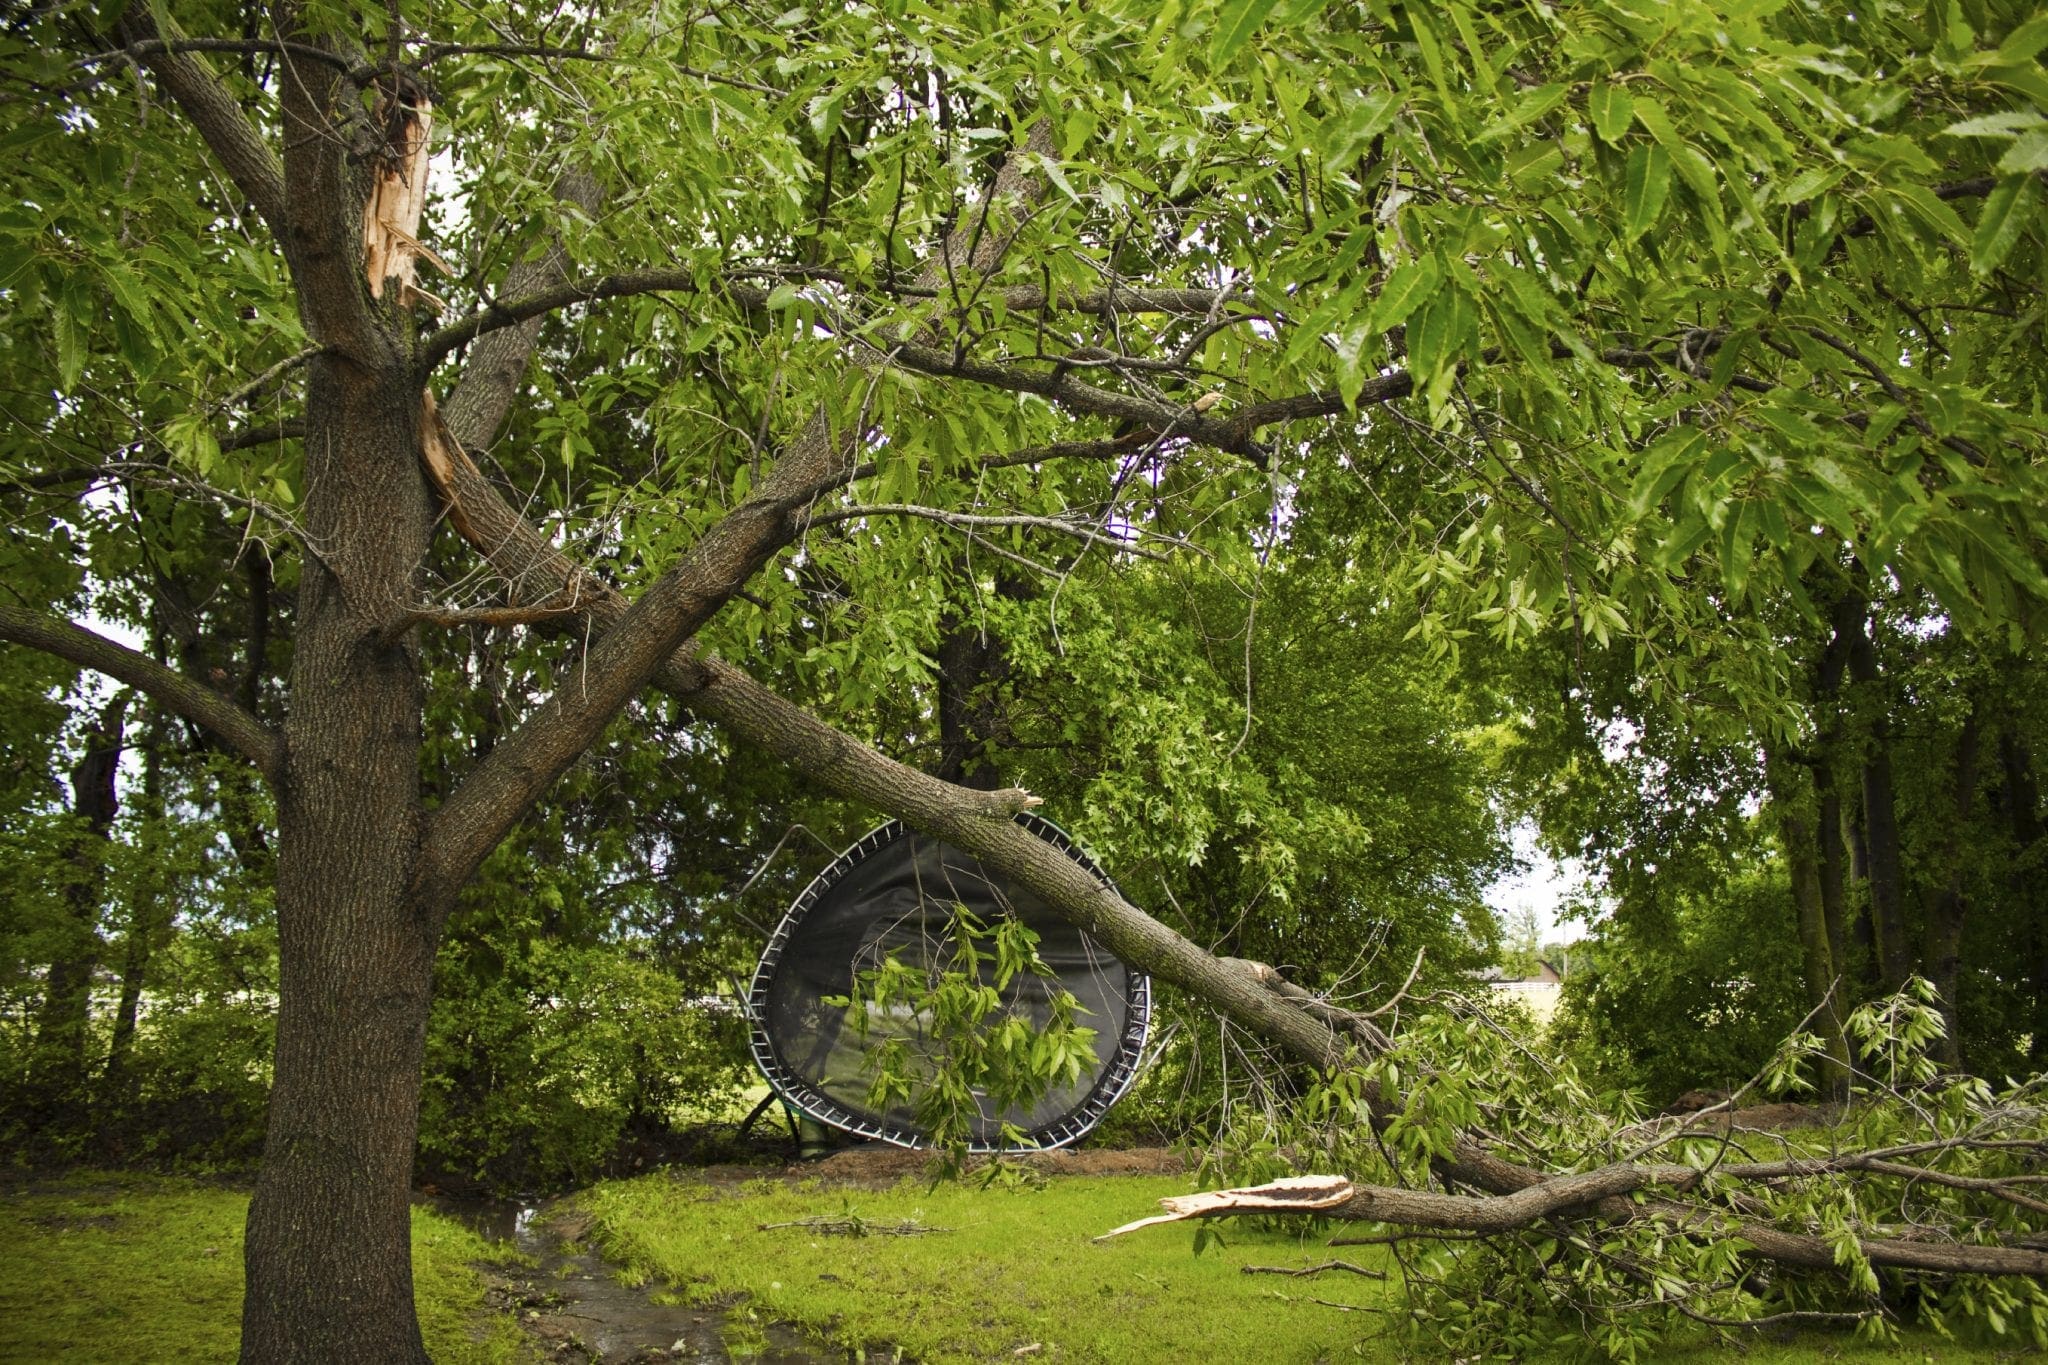 storm damage treestorm damage tree 000041553368 large